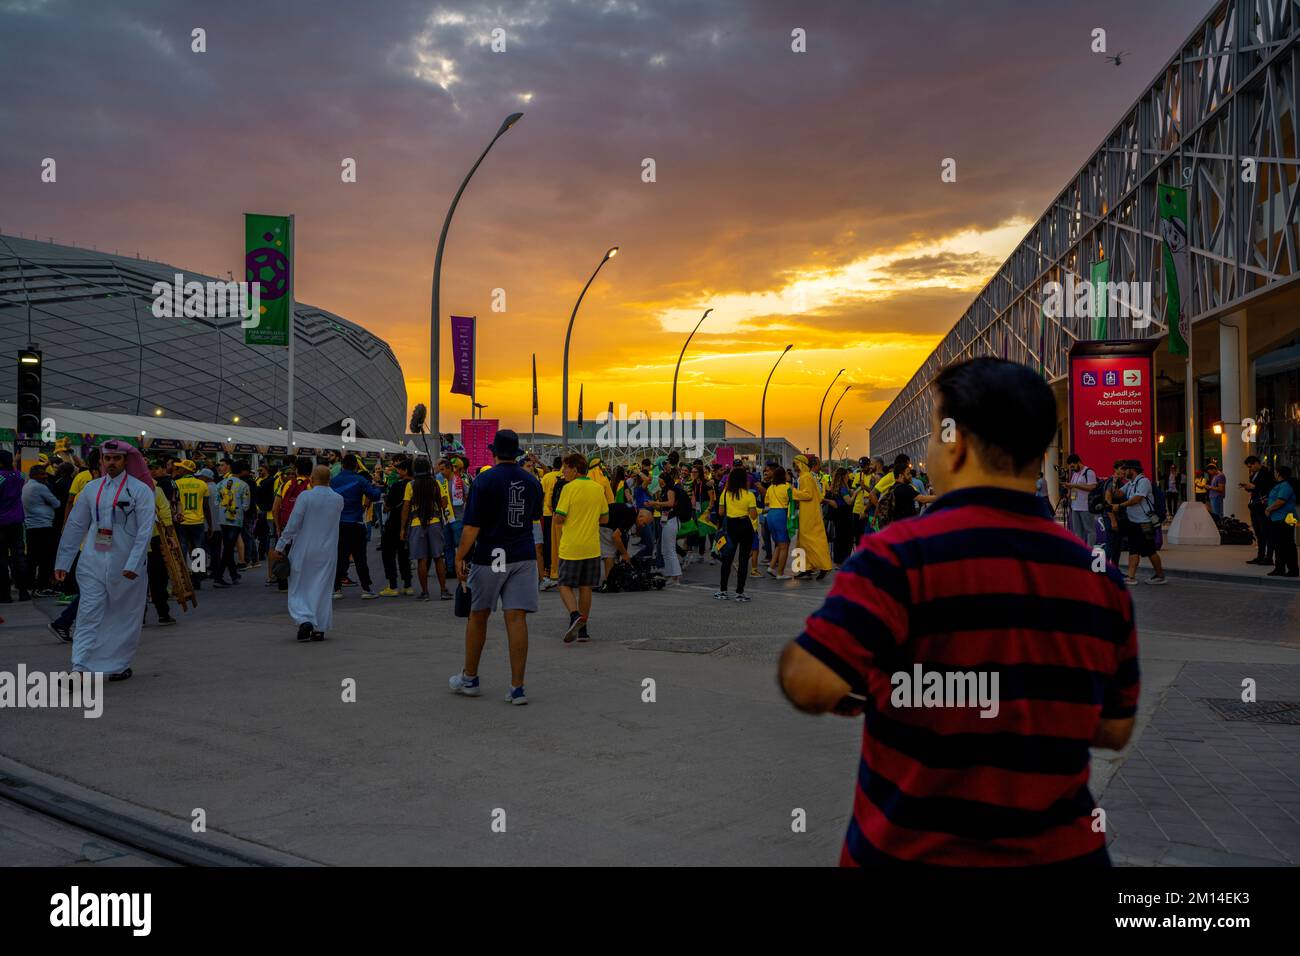 Brasiliano, sudcoreano tifosi di calcio in qatar 2022 Coppa del mondo 11-12-2022-Doha Qatar Foto Stock